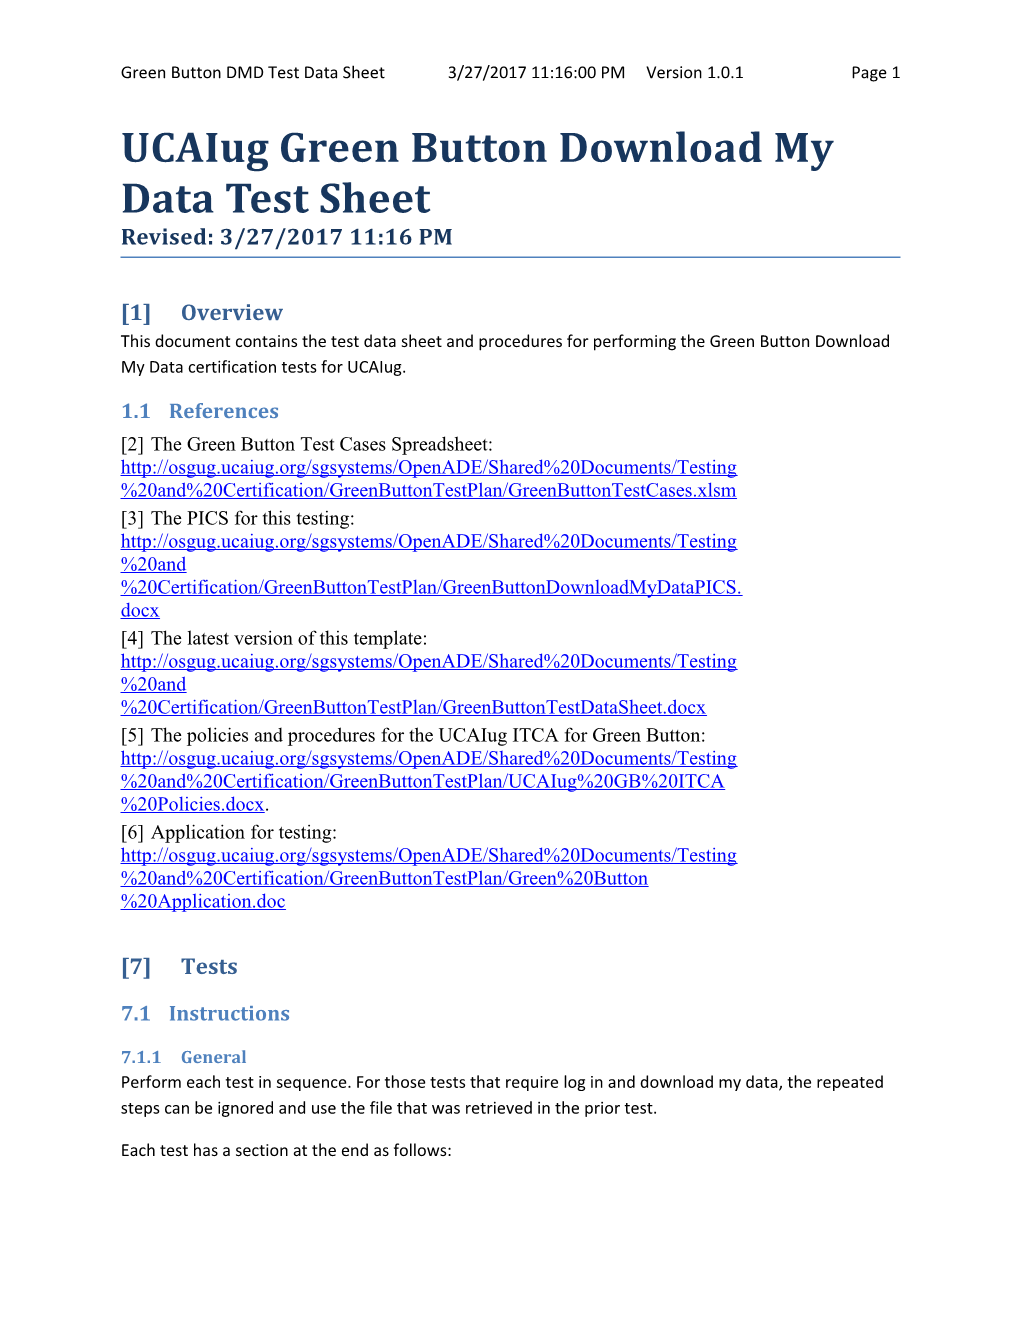 Green Button Test Data Sheet Ver. 1.0.2